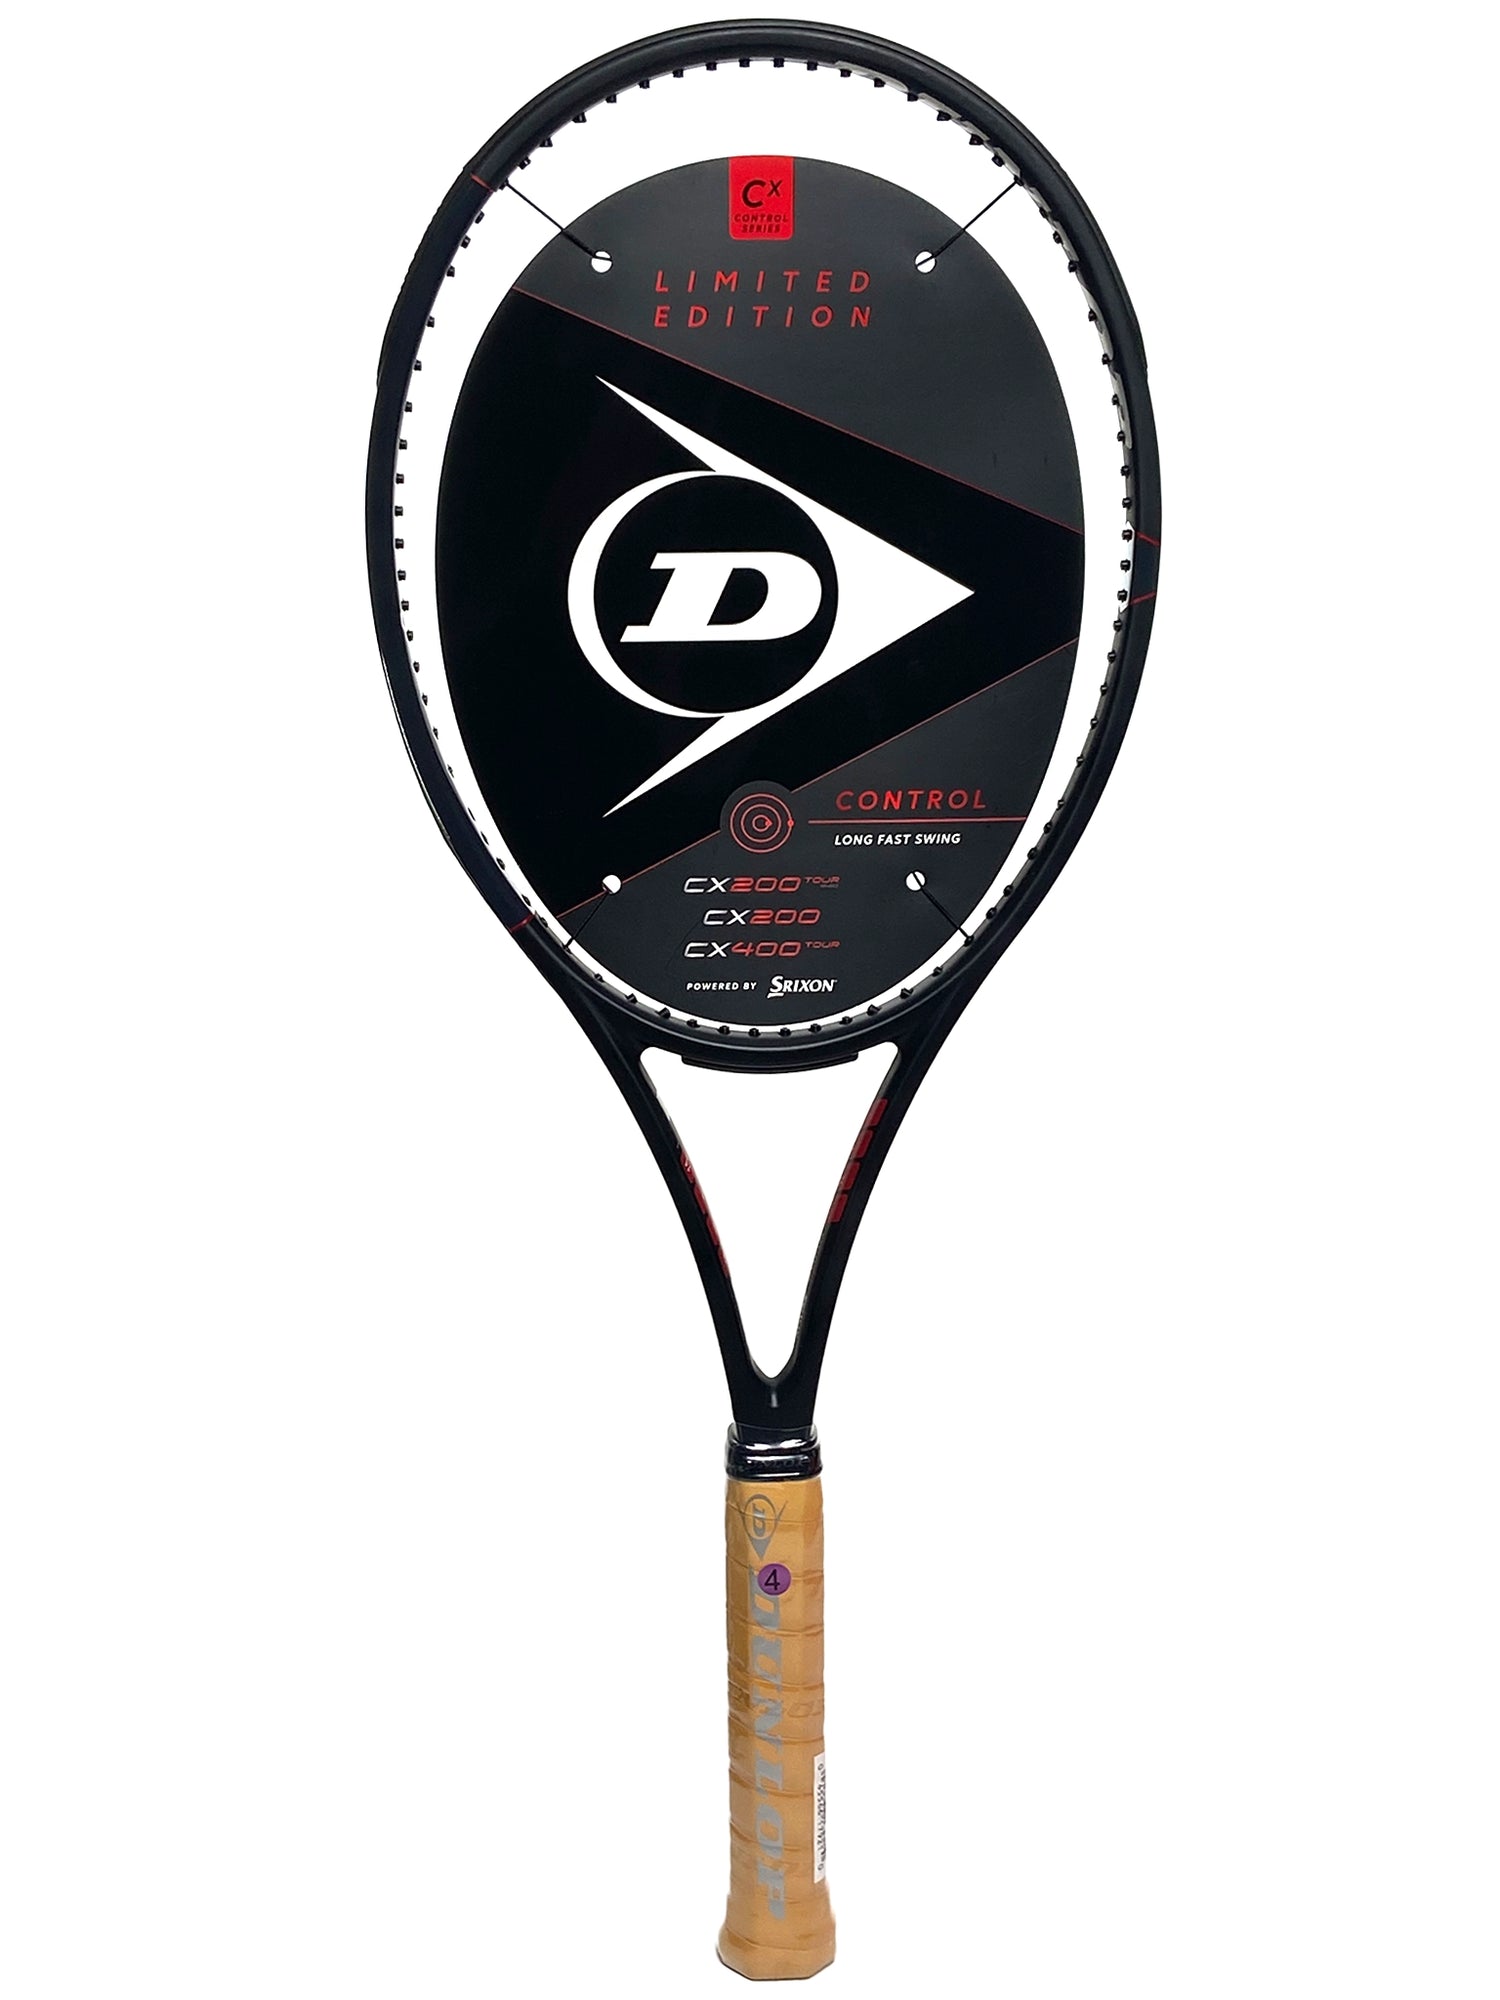 Dunlop CX 200 Tour 18x20 Limited Edition | Tenniszon